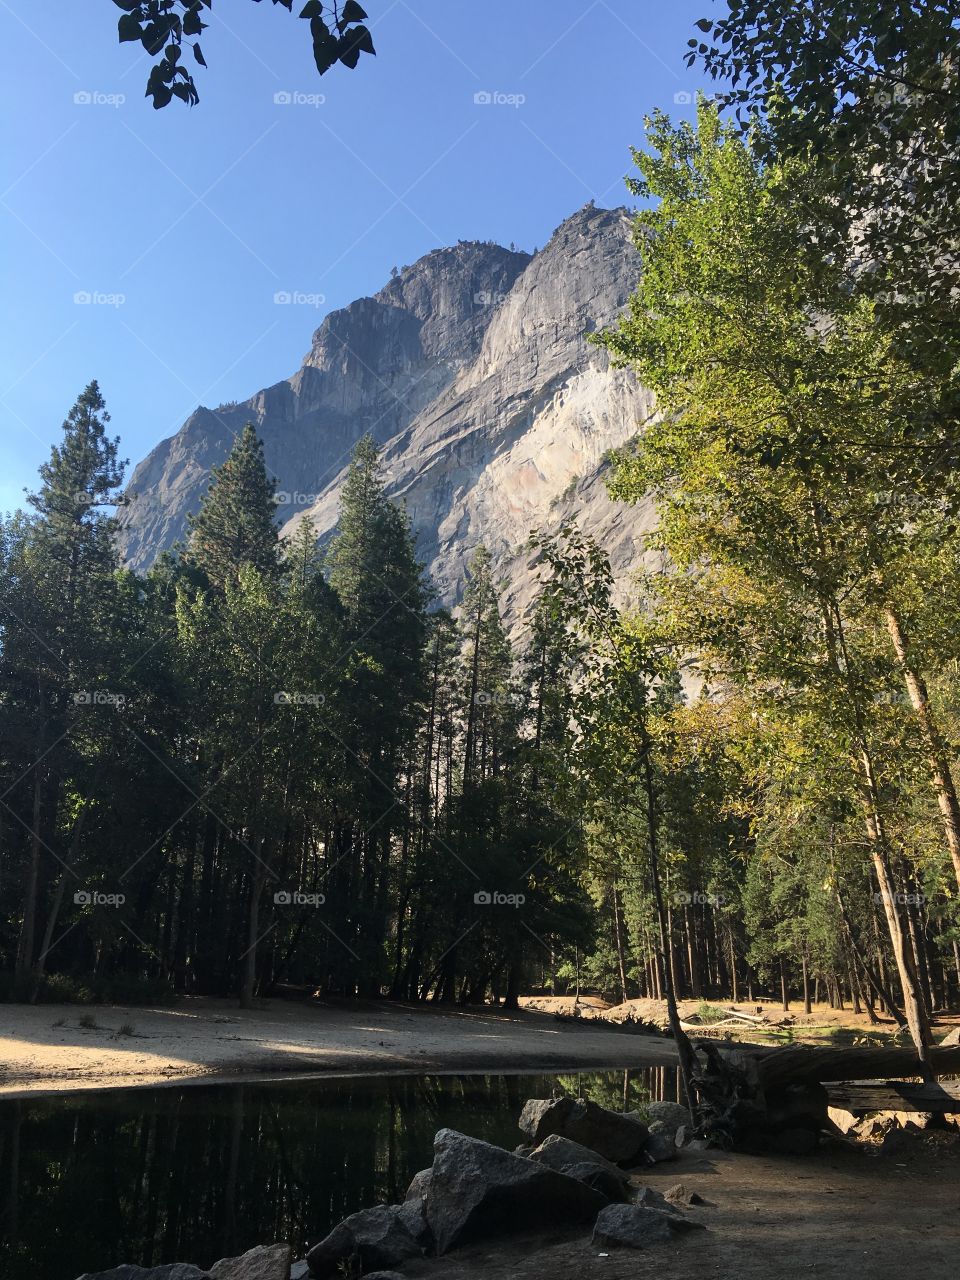 Yosemite morning run